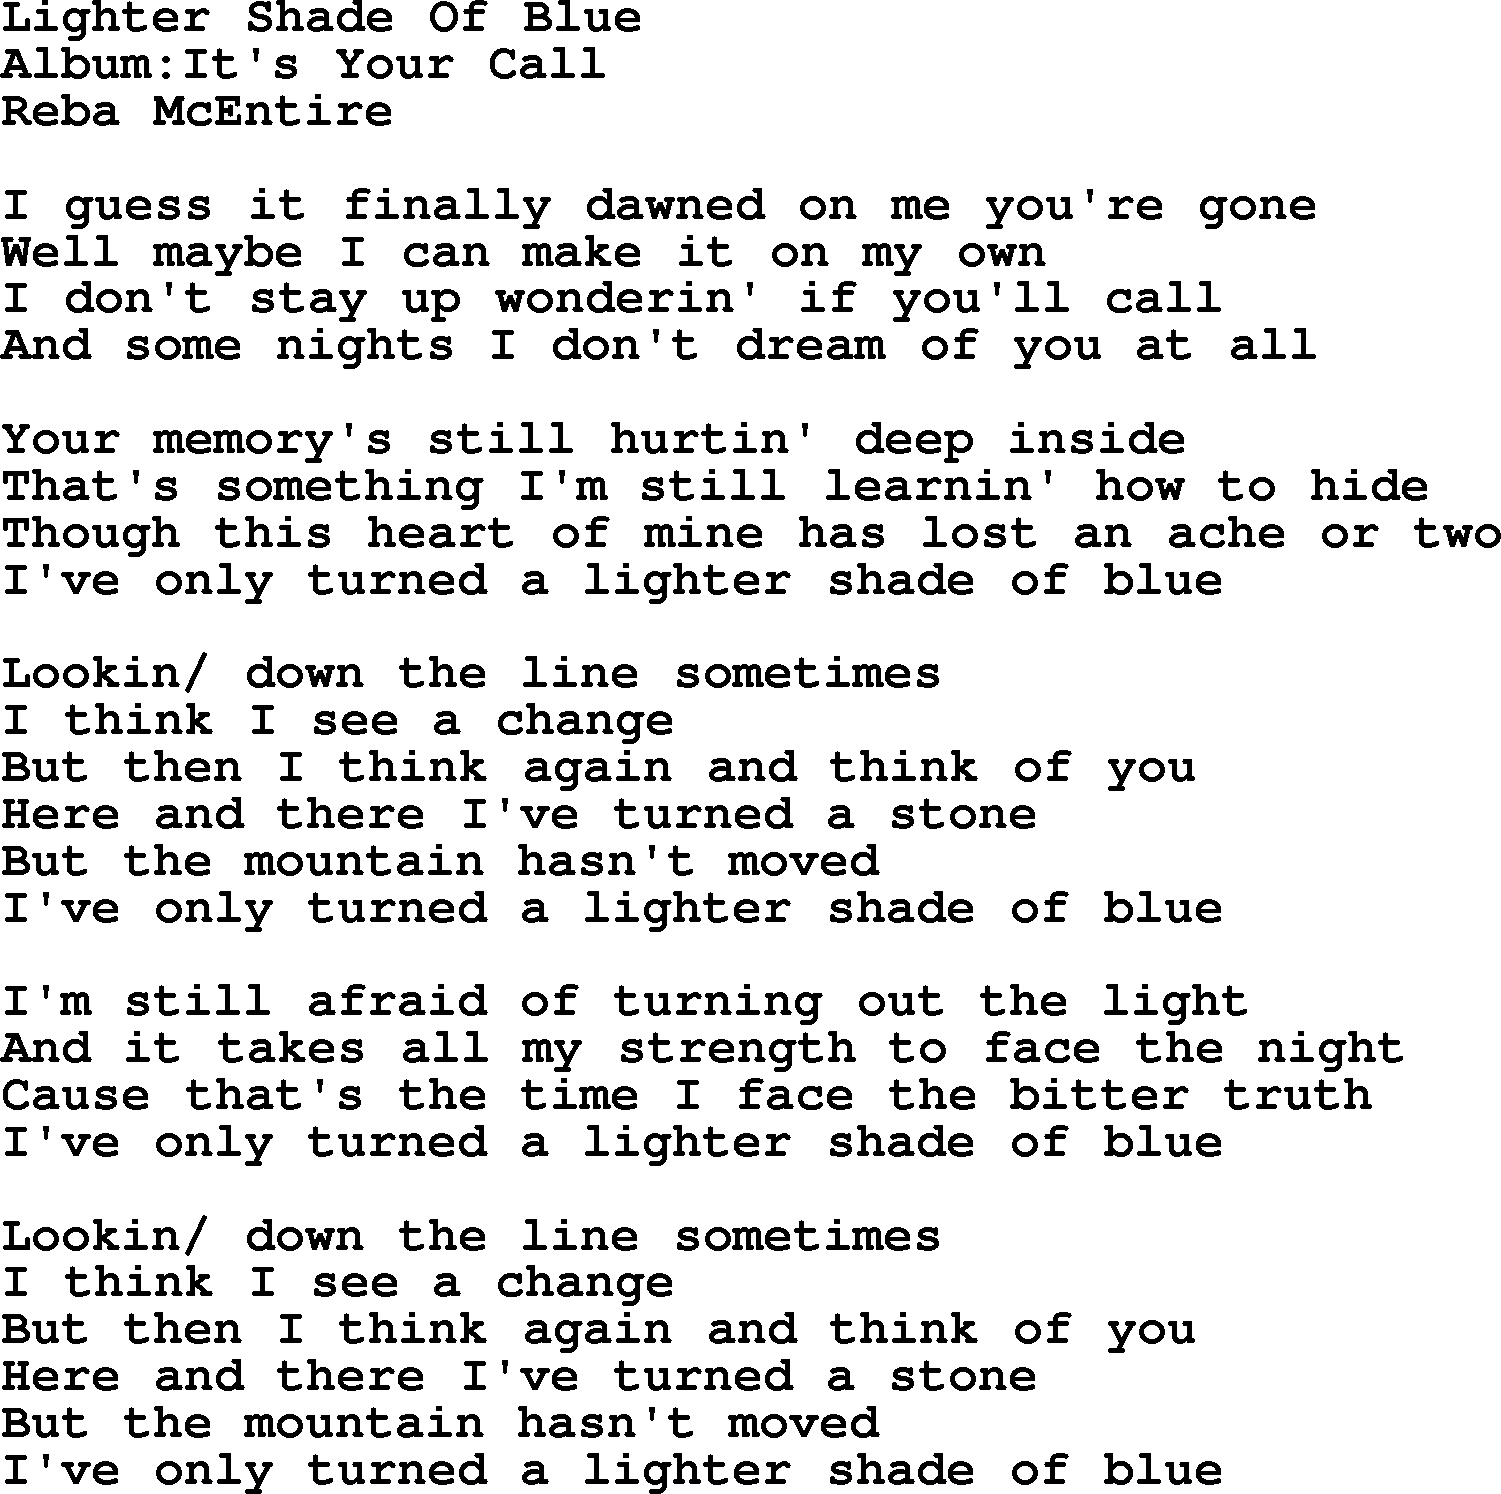 Reba McEntire song: Lighter Shade Of Blue lyrics